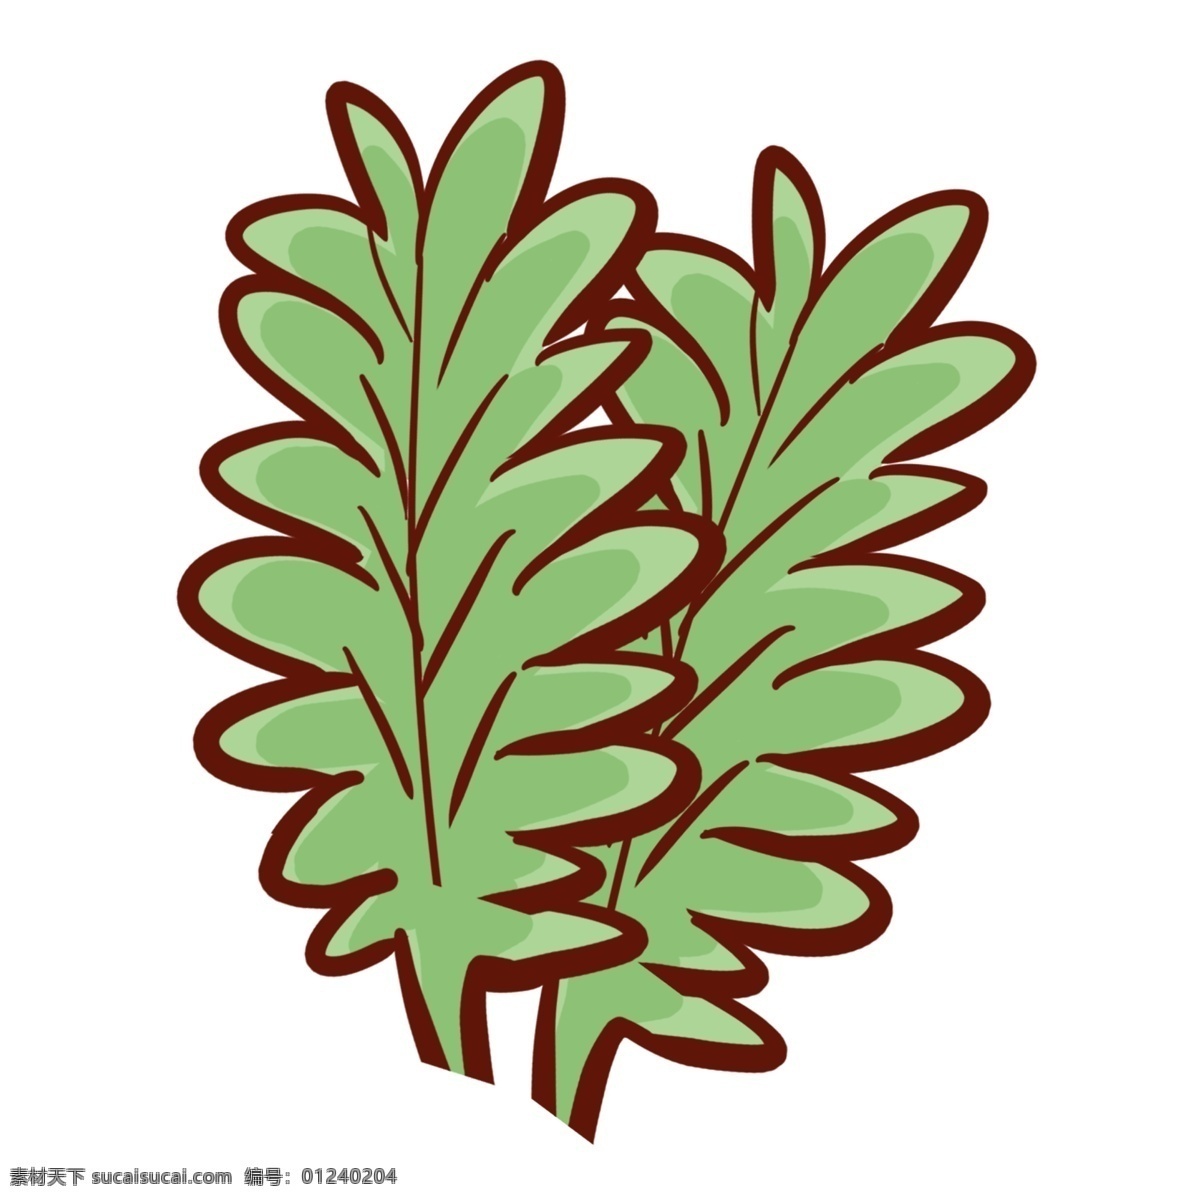 清新 水彩 彩绘 叶子 清雅 装饰图案 免扣素材 透明素材 绿色 植物